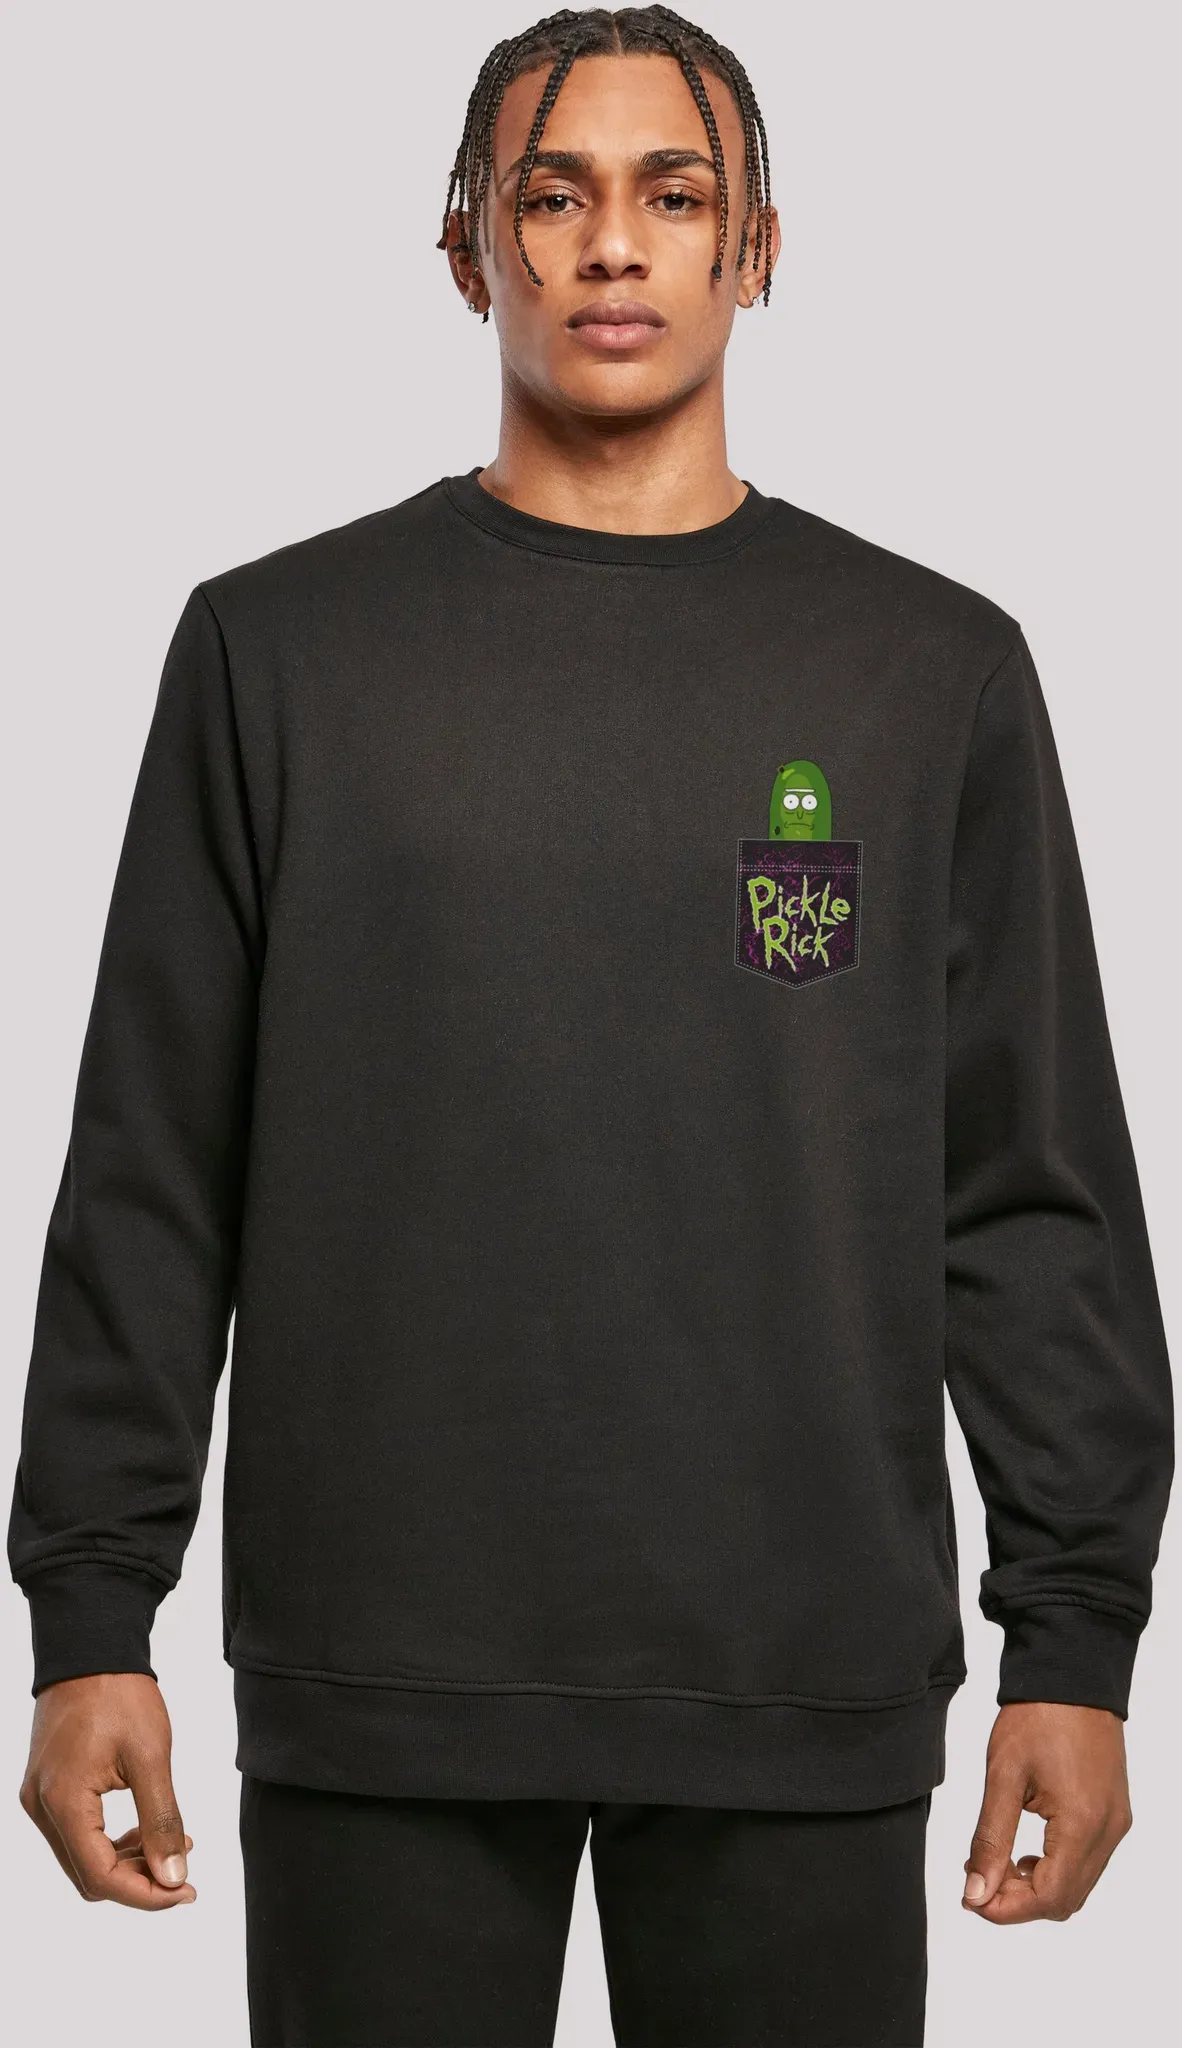 Sweatshirt F4NT4STIC "Rick und Morty Pickle Rick" Gr. XL, schwarz Herren Sweatshirts Print